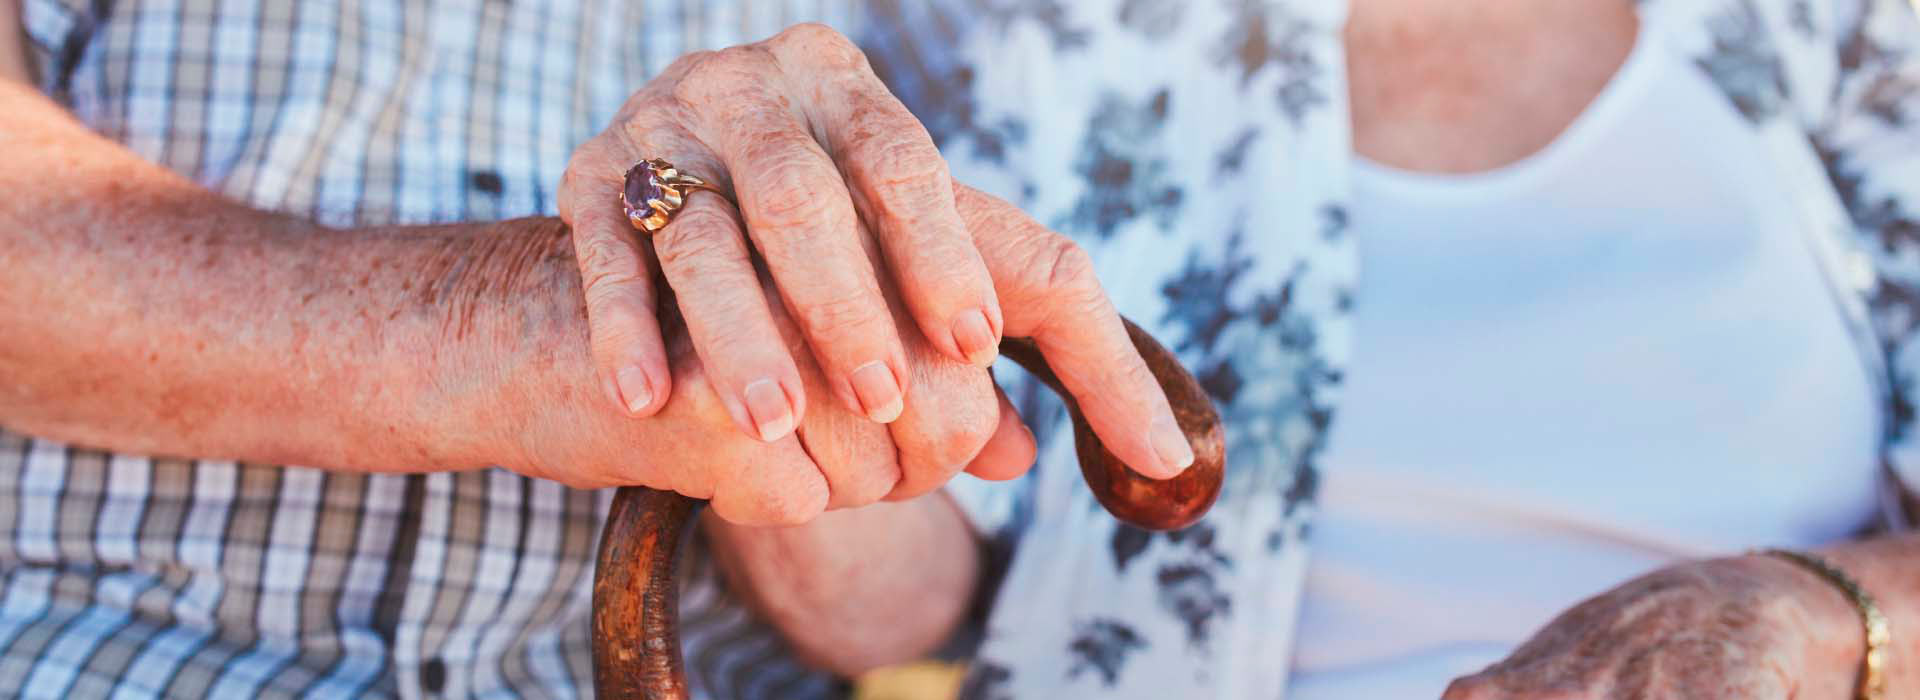 Imagem de duas pessoas idosas de mãos dadas